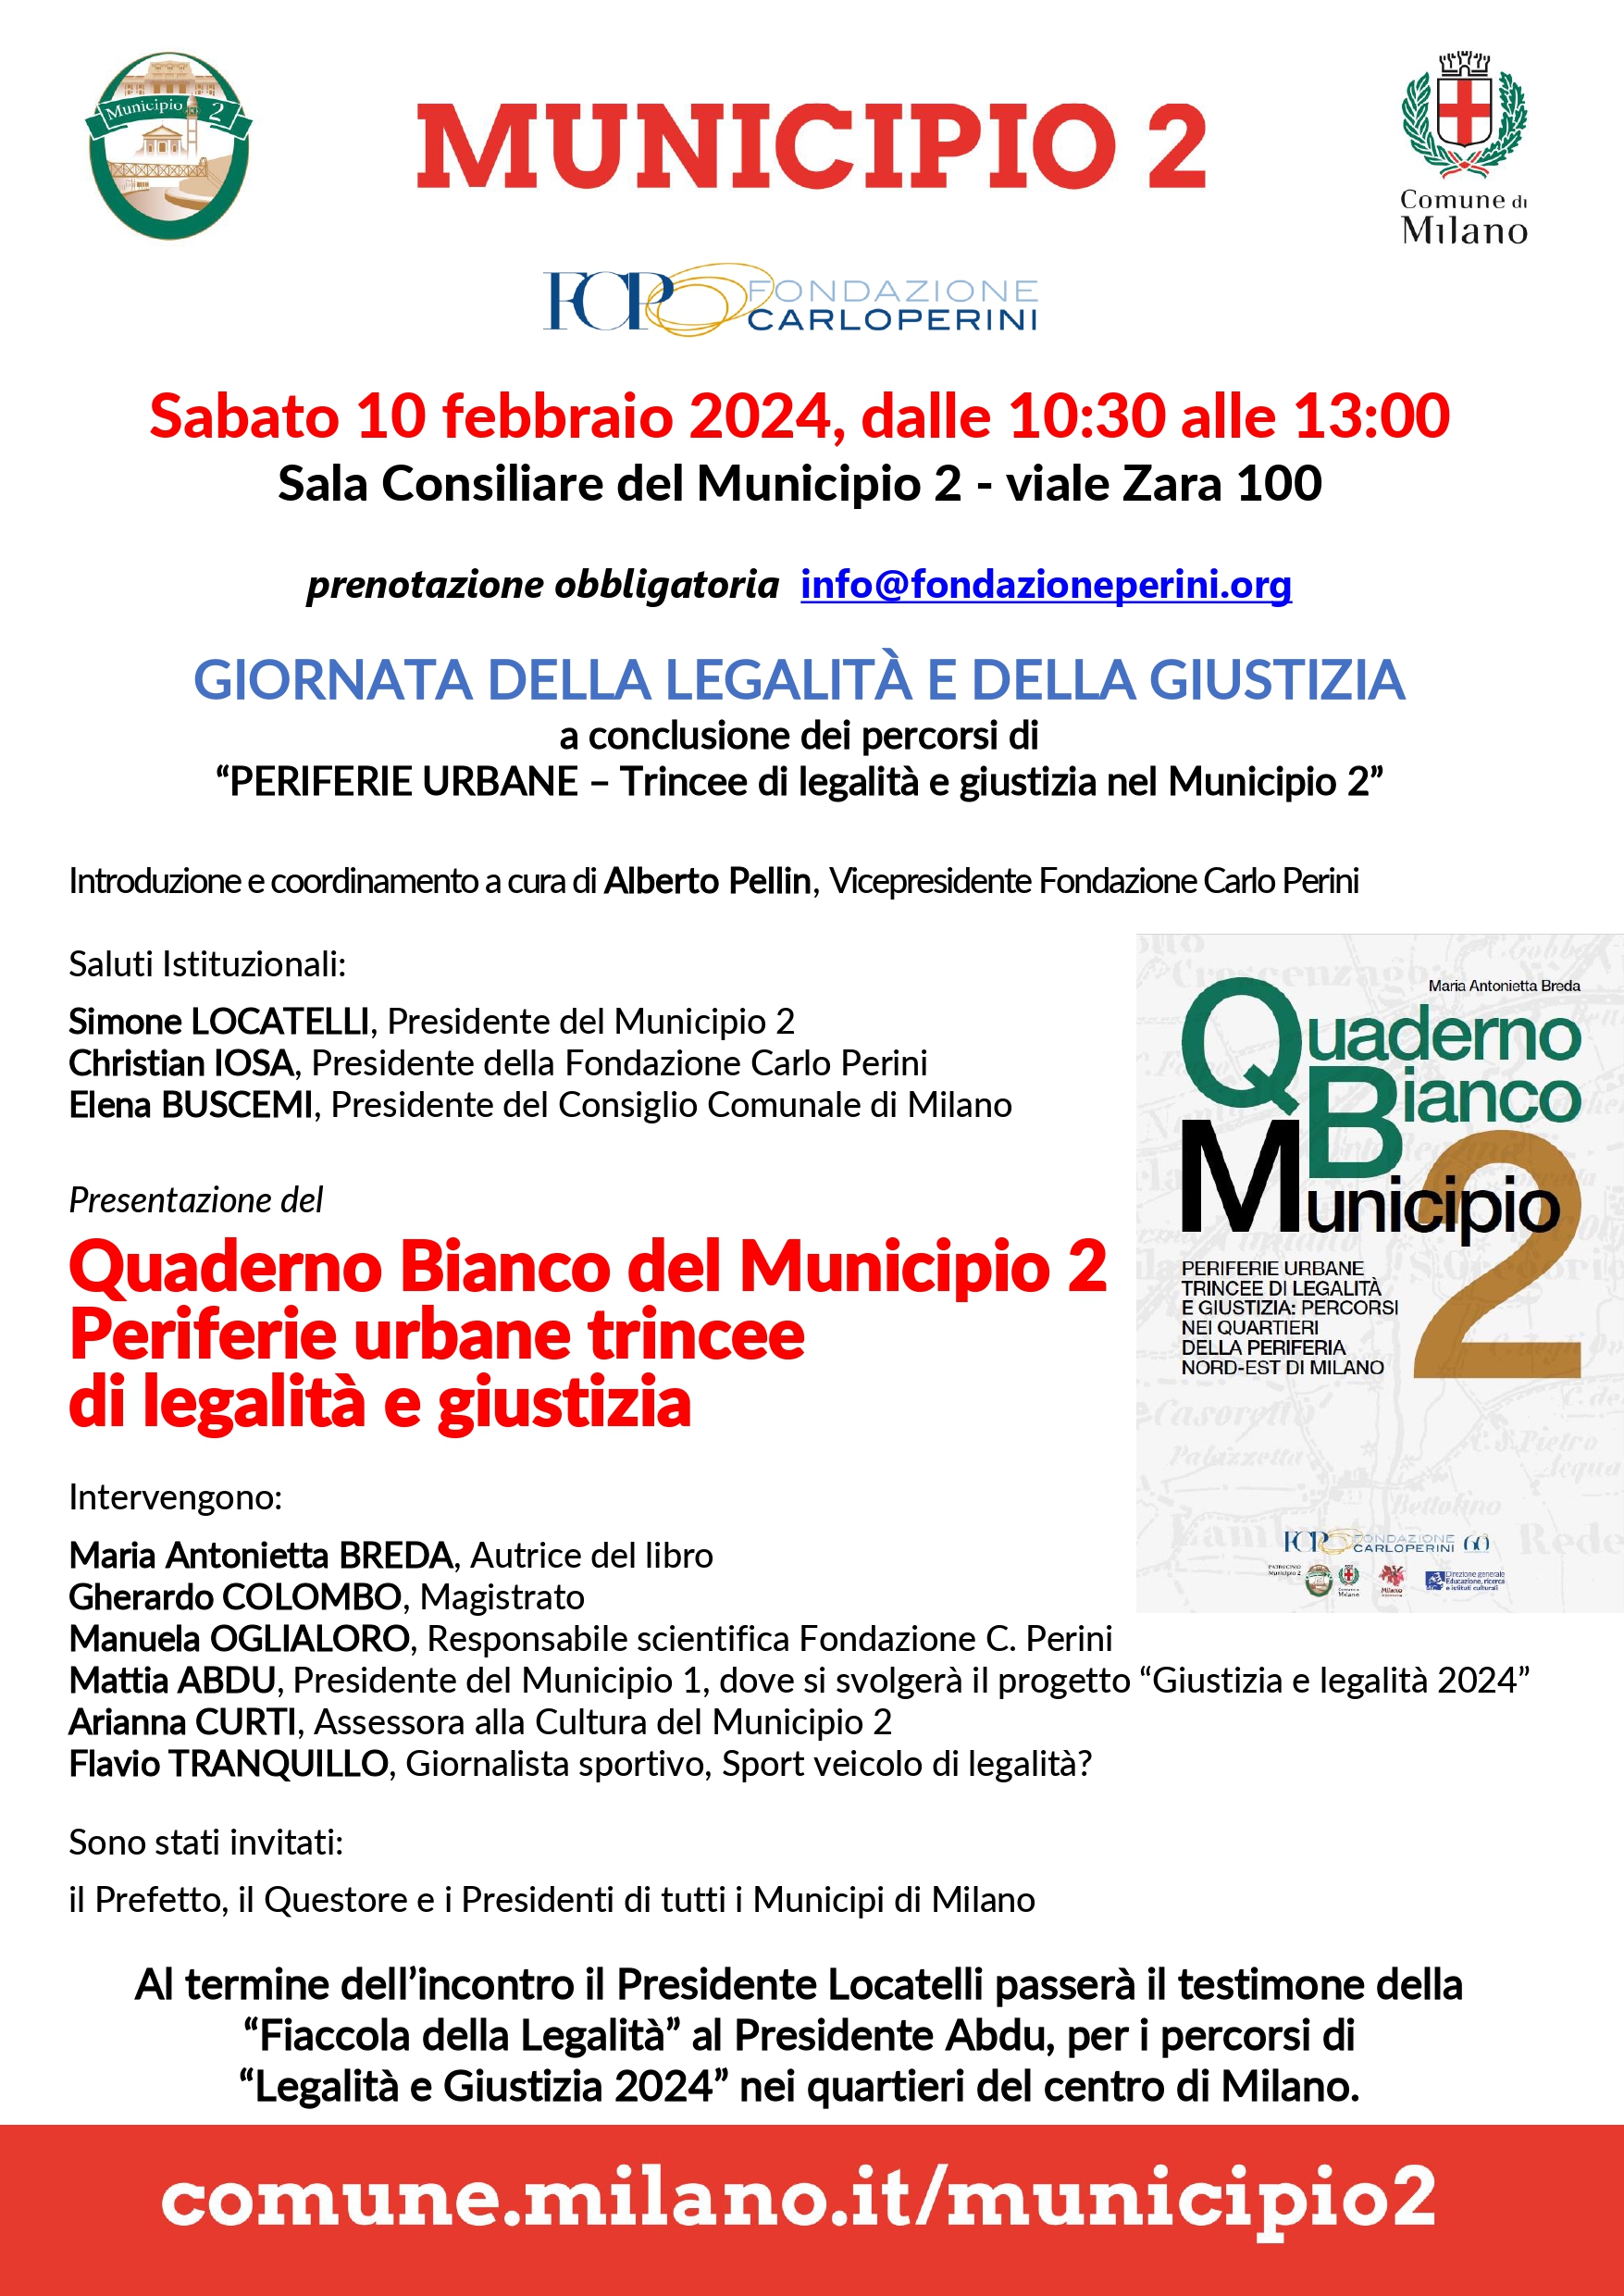 Locandina che pubblicizza la presentazione del Quaderno Bianco del Municipio 2 di Milano